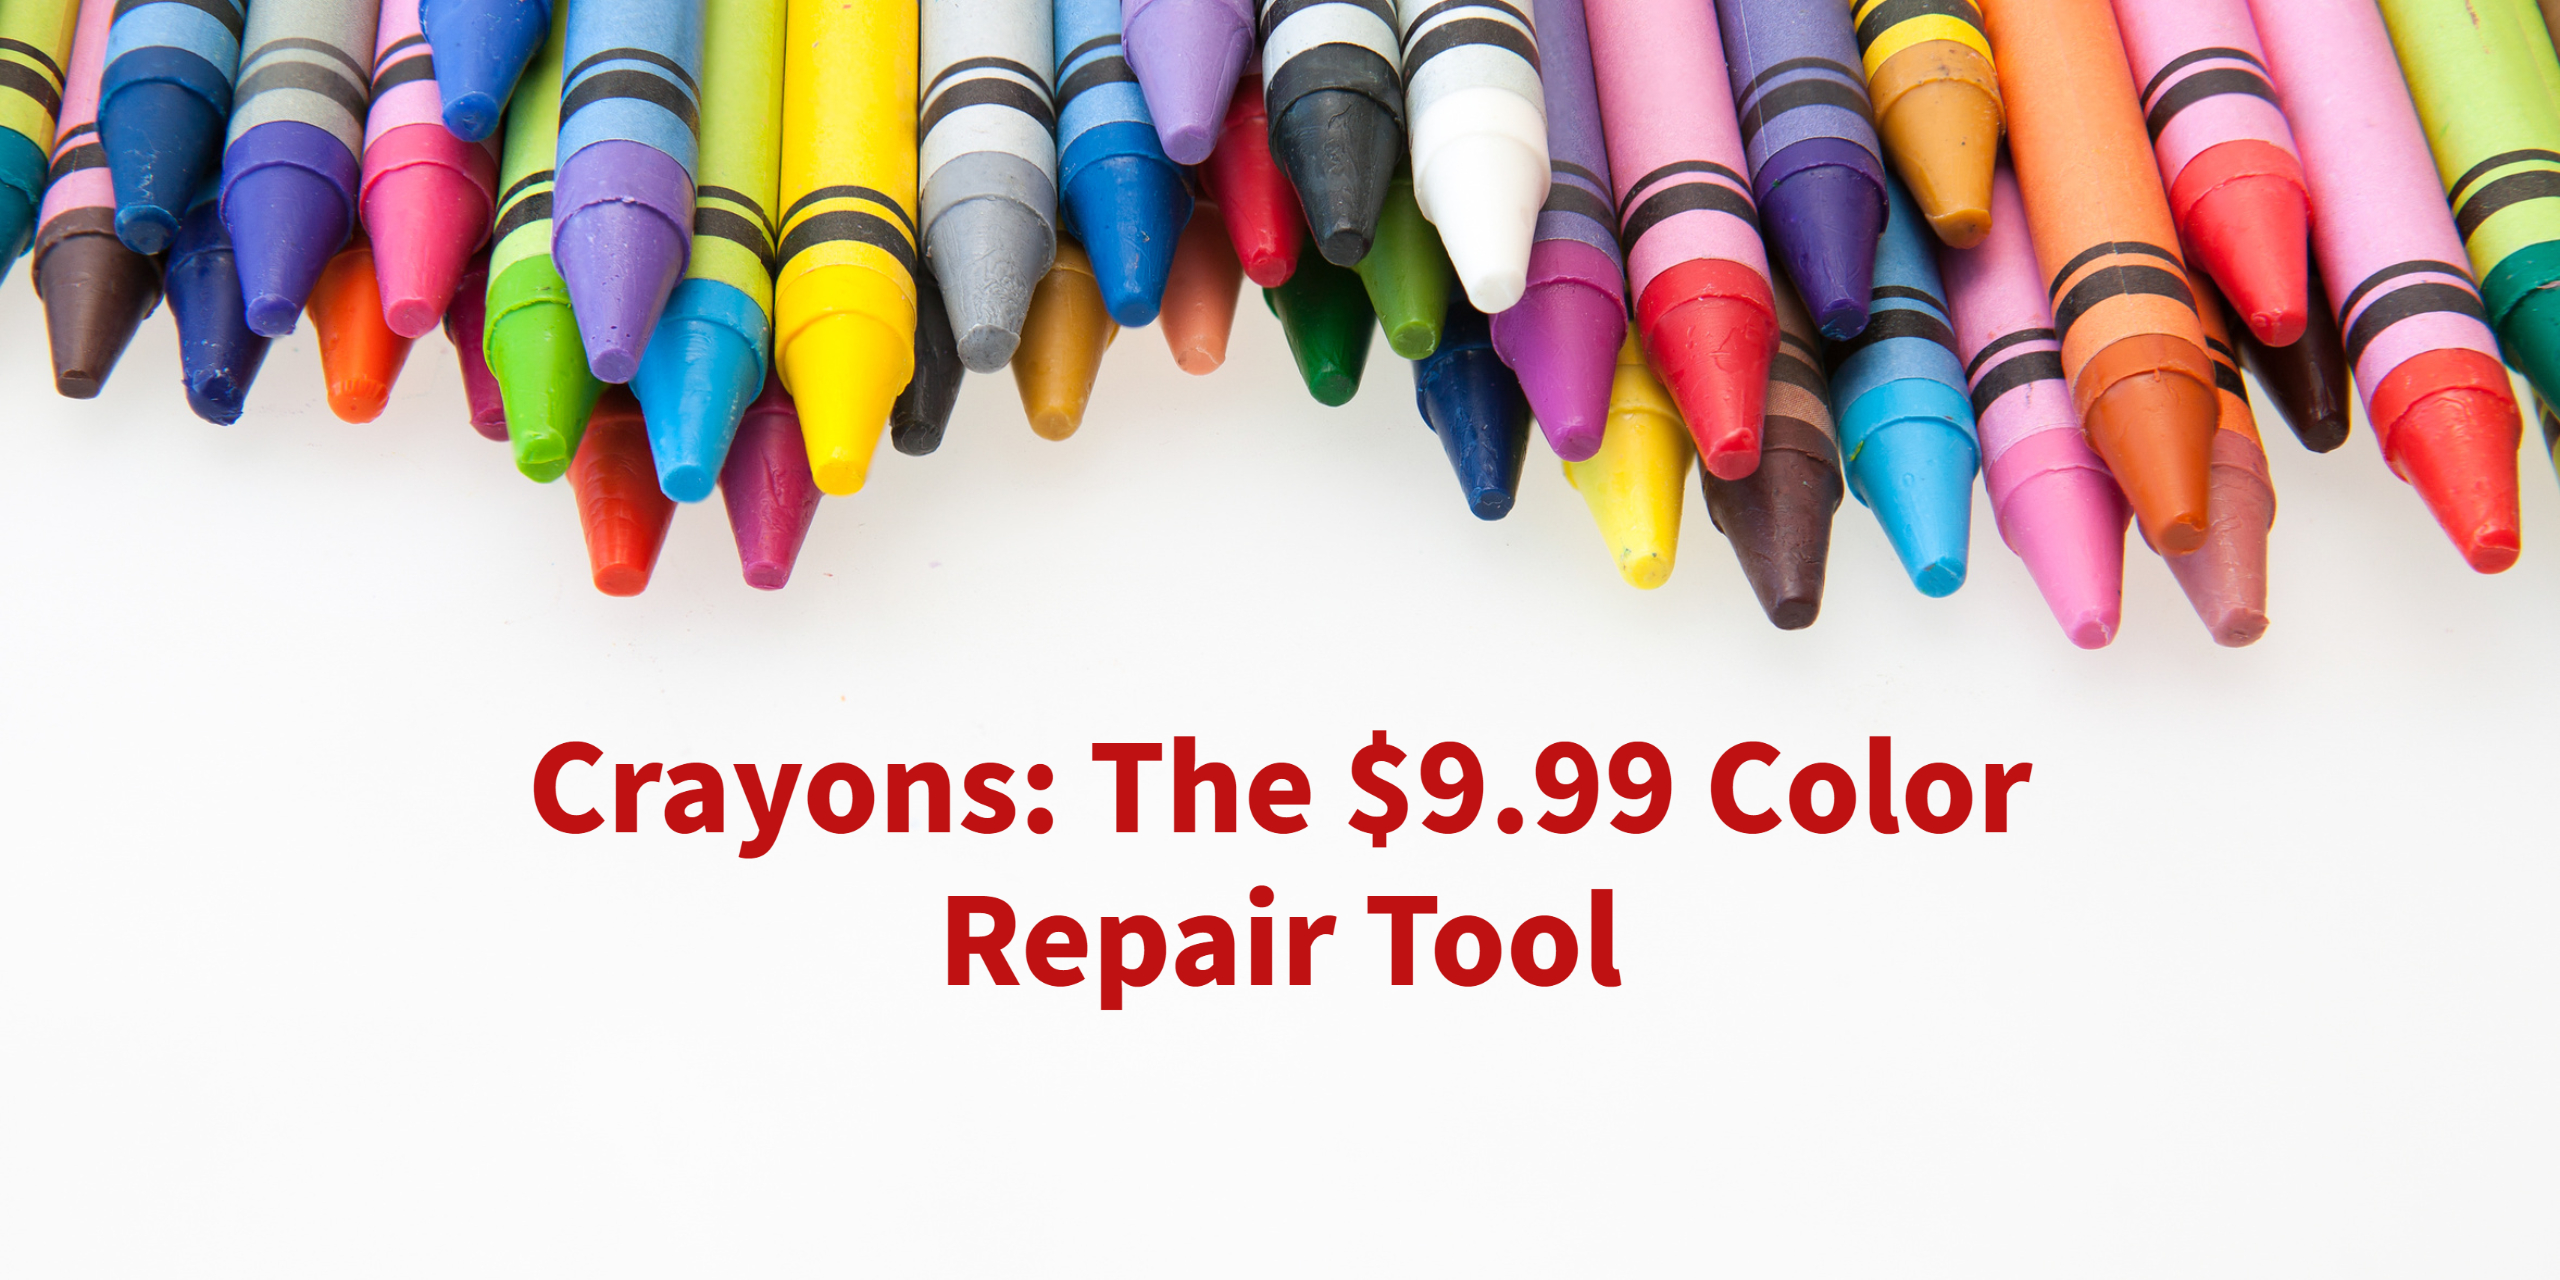 Crayons: The $9.99 Color Repair Tool